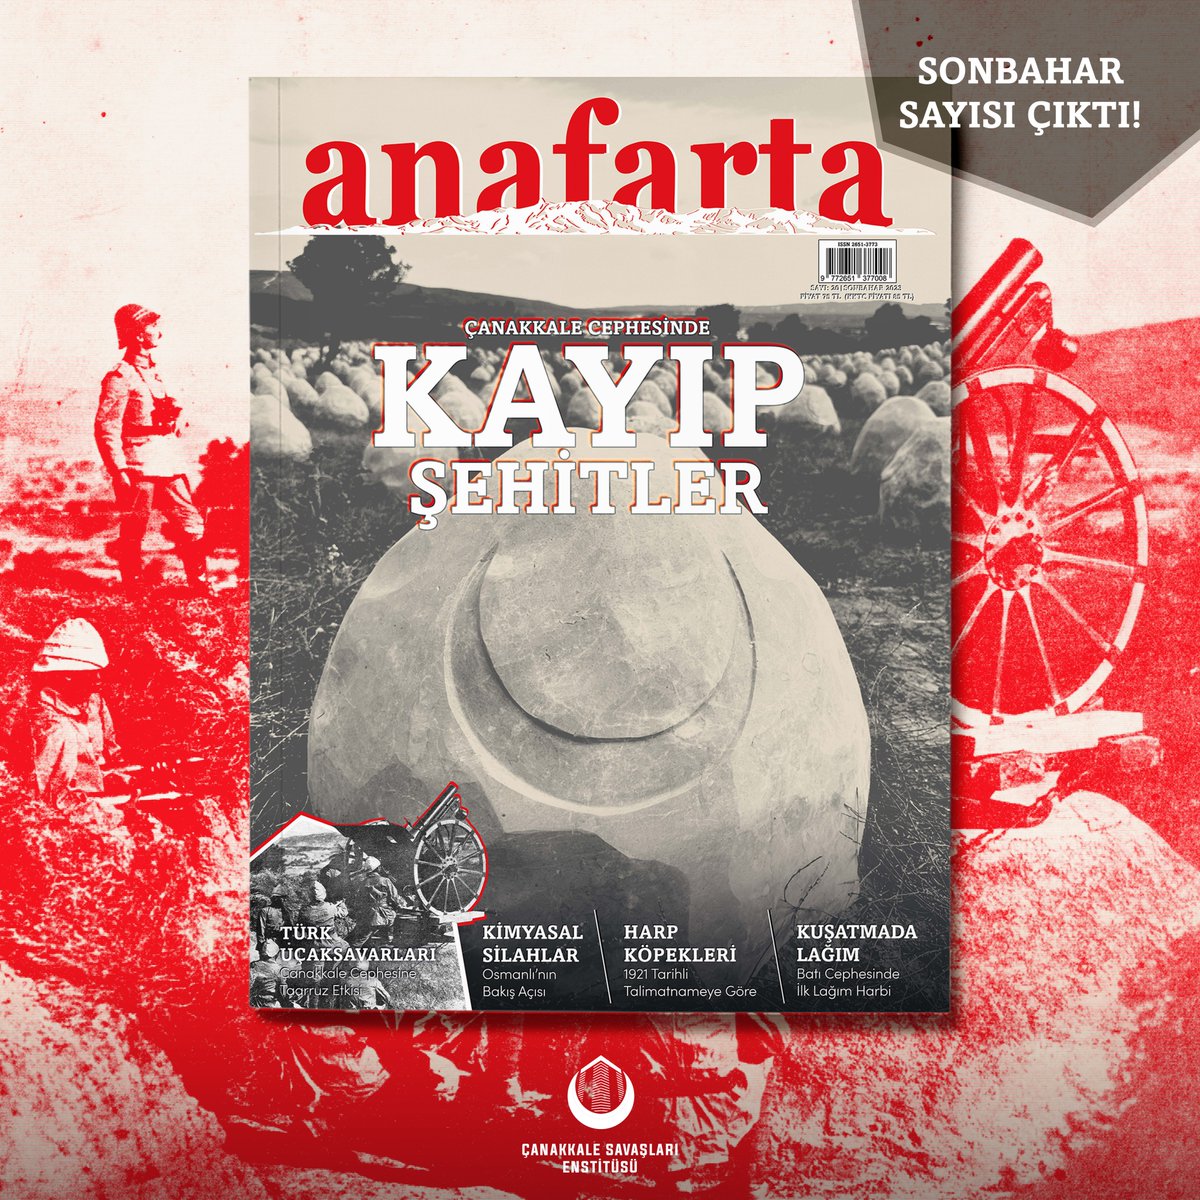 Enstitümüz süreli yayınlarından Anafarta 20. sayısıyla raflarda yerini aldı.

🔗casaen.org/anafarta-ve-pa…